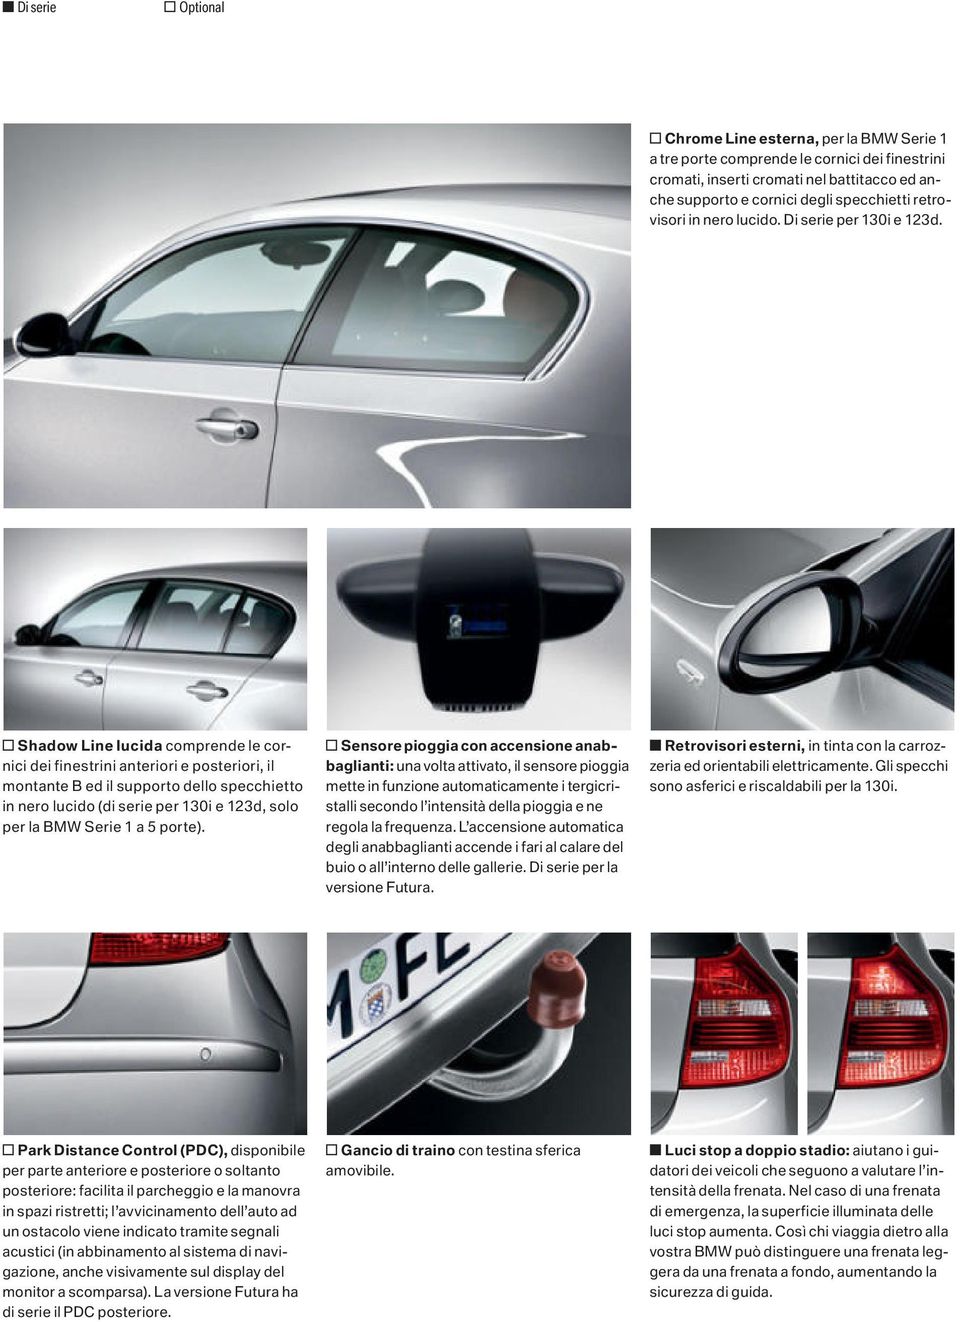 o Shadow Line lucida comprende le cornici dei finestrini anteriori e posteriori, il montante B ed il supporto dello specchietto in nero lucido (di serie per 130i e 123d, solo per la BMW Serie 1 a 5